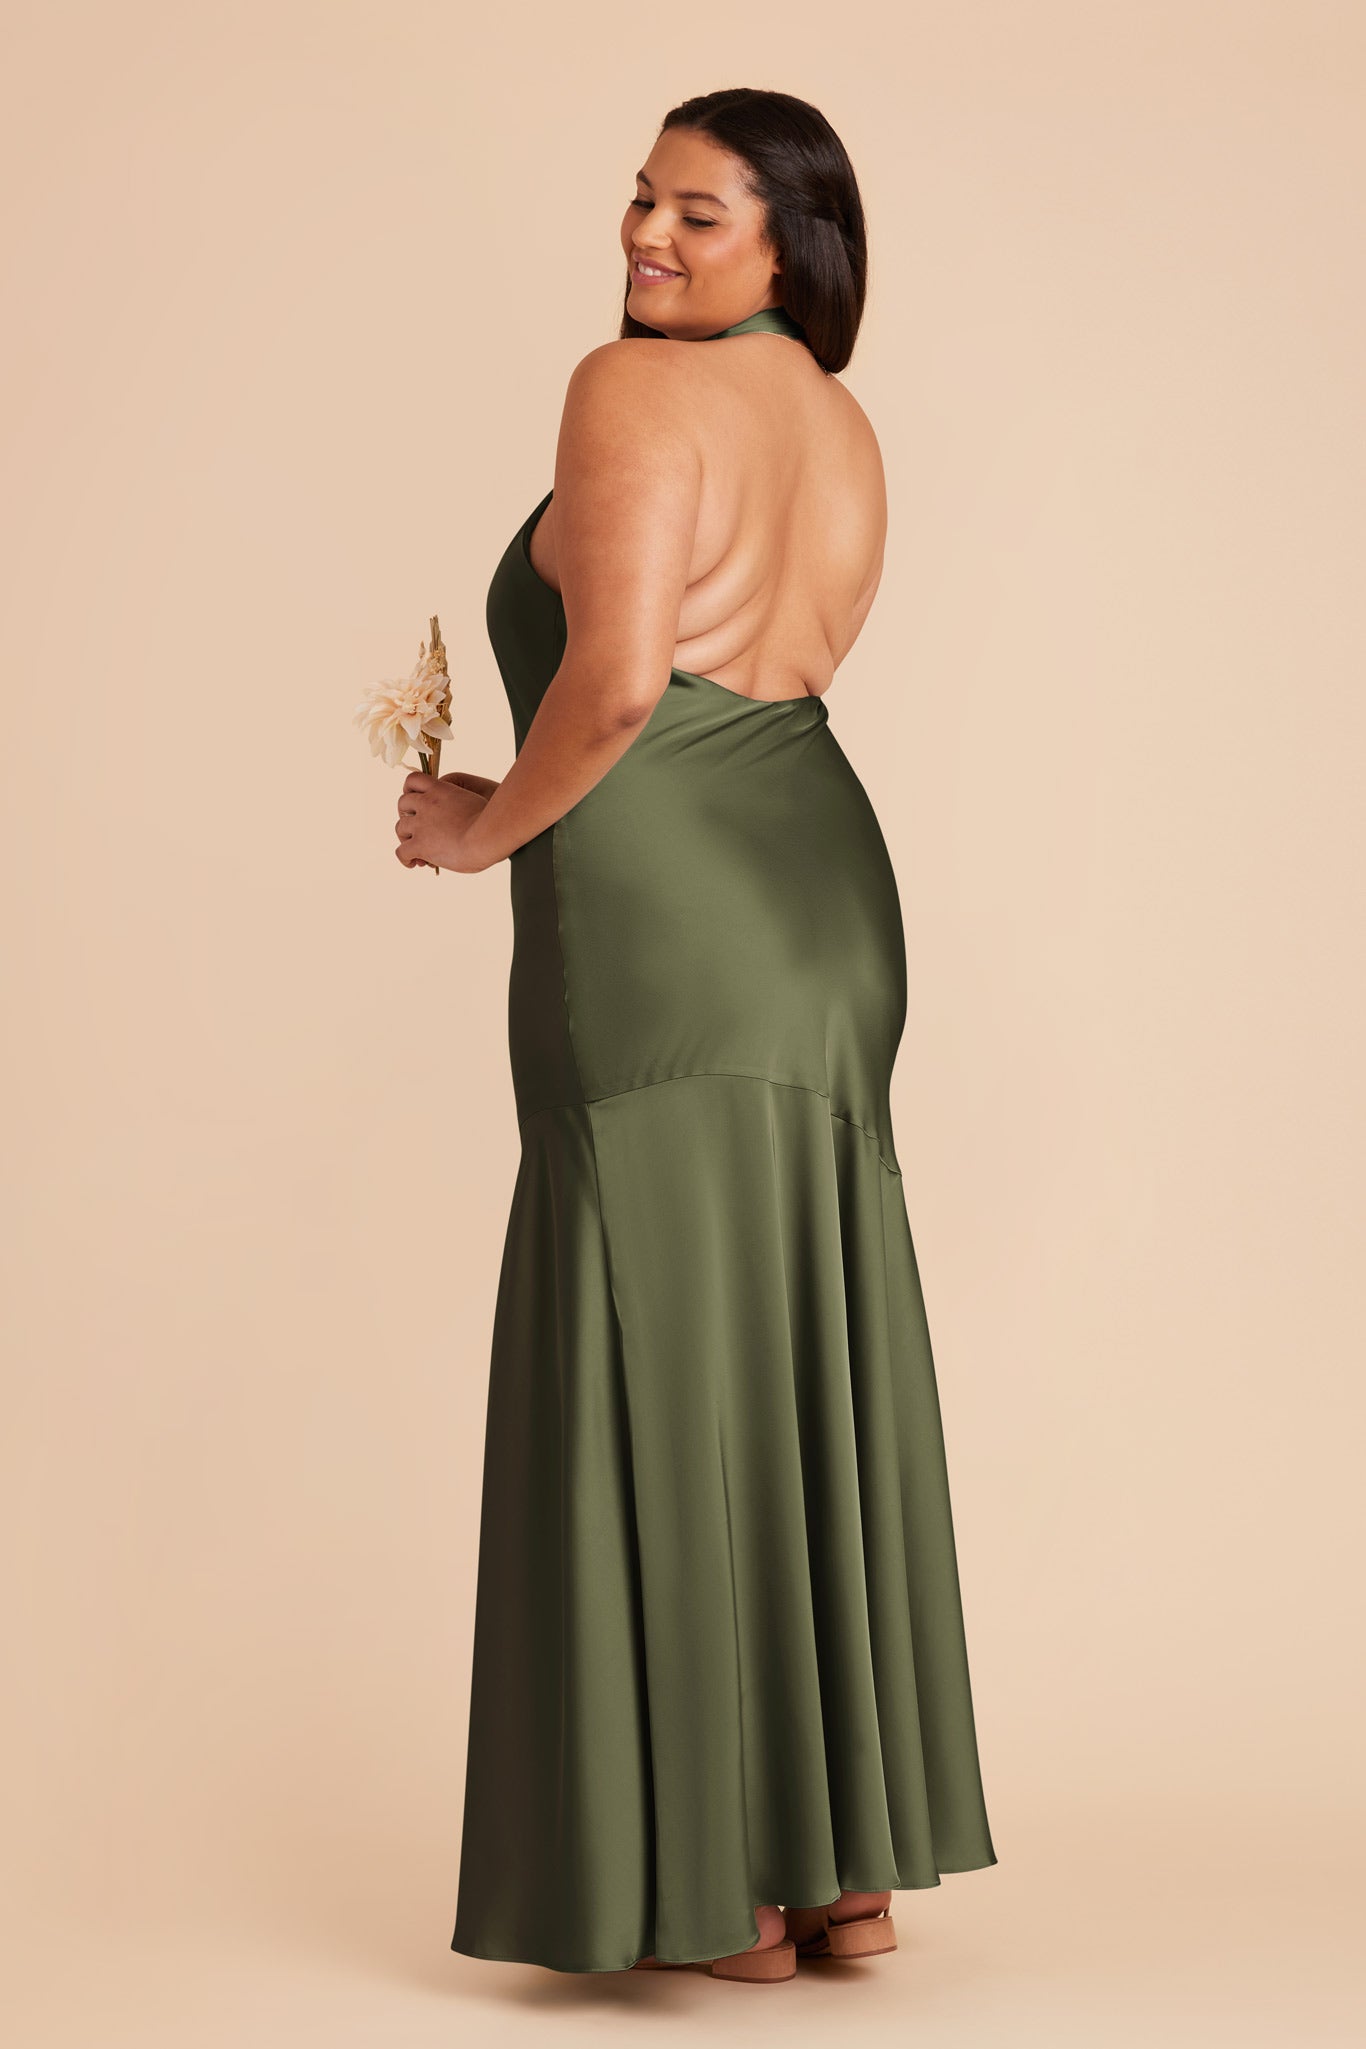 Olive Stephanie Matte Satin Dress by Birdy Grey